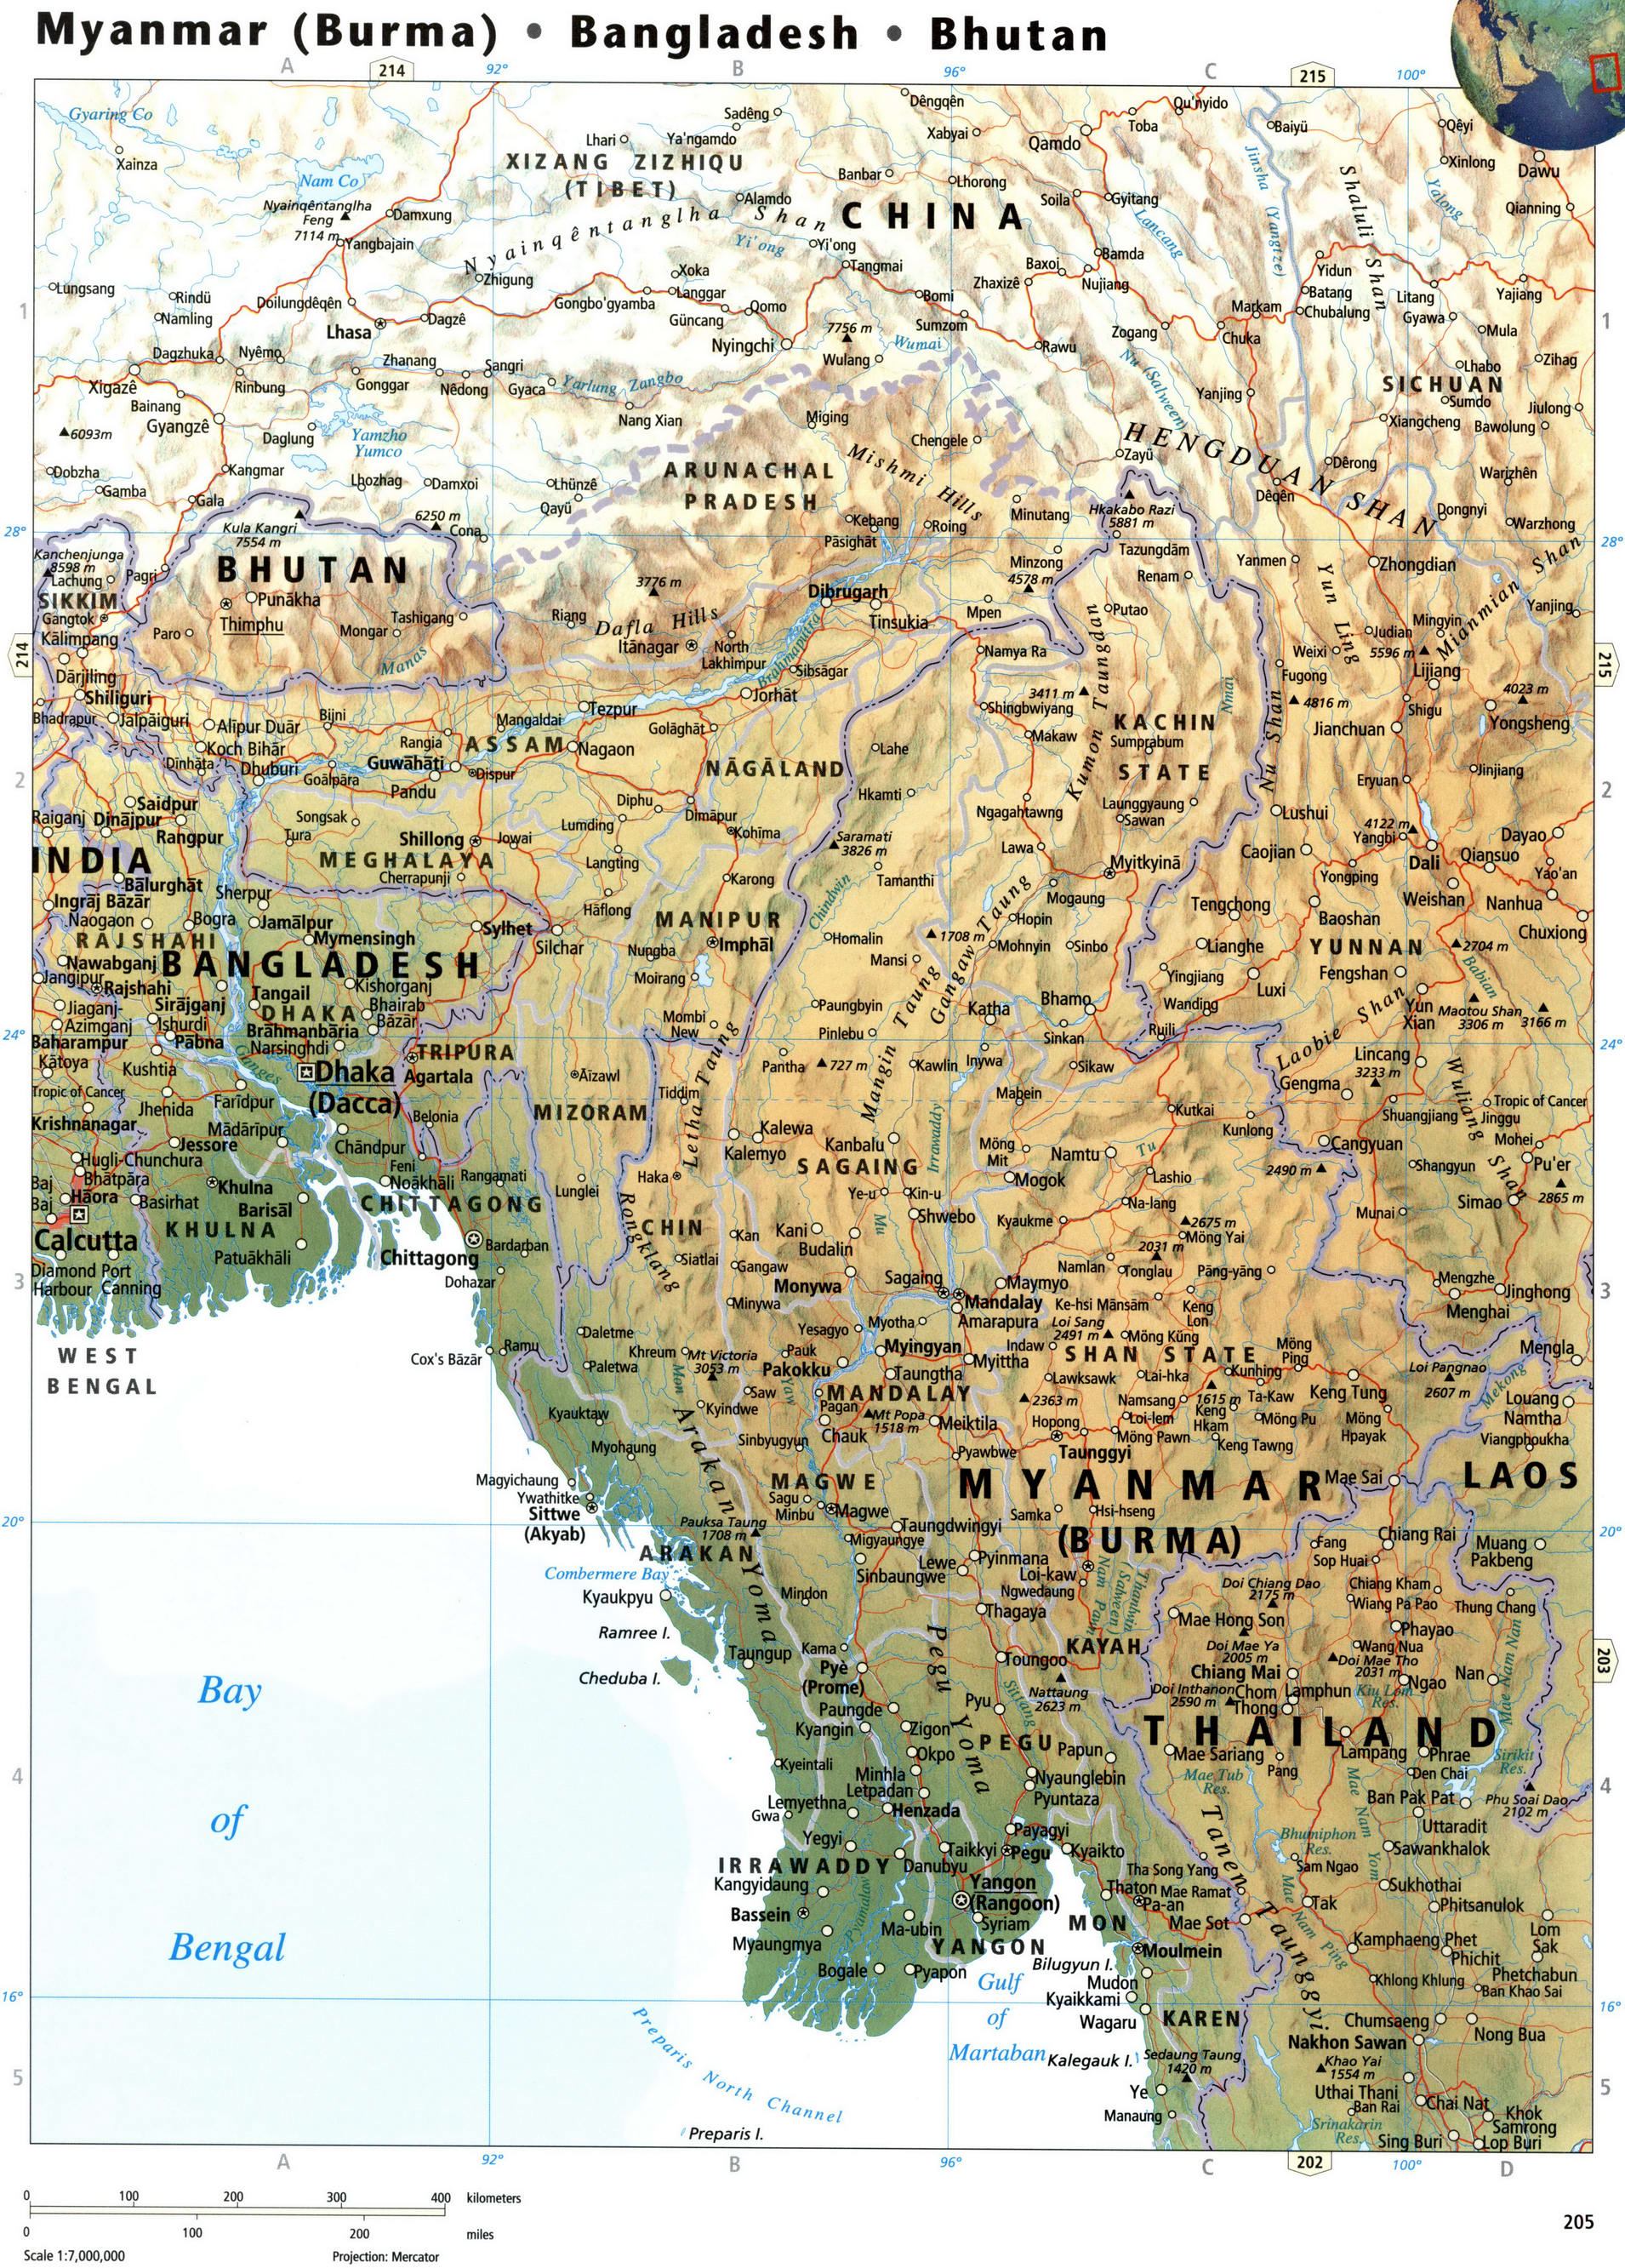 Myanmar and Bangladesh map